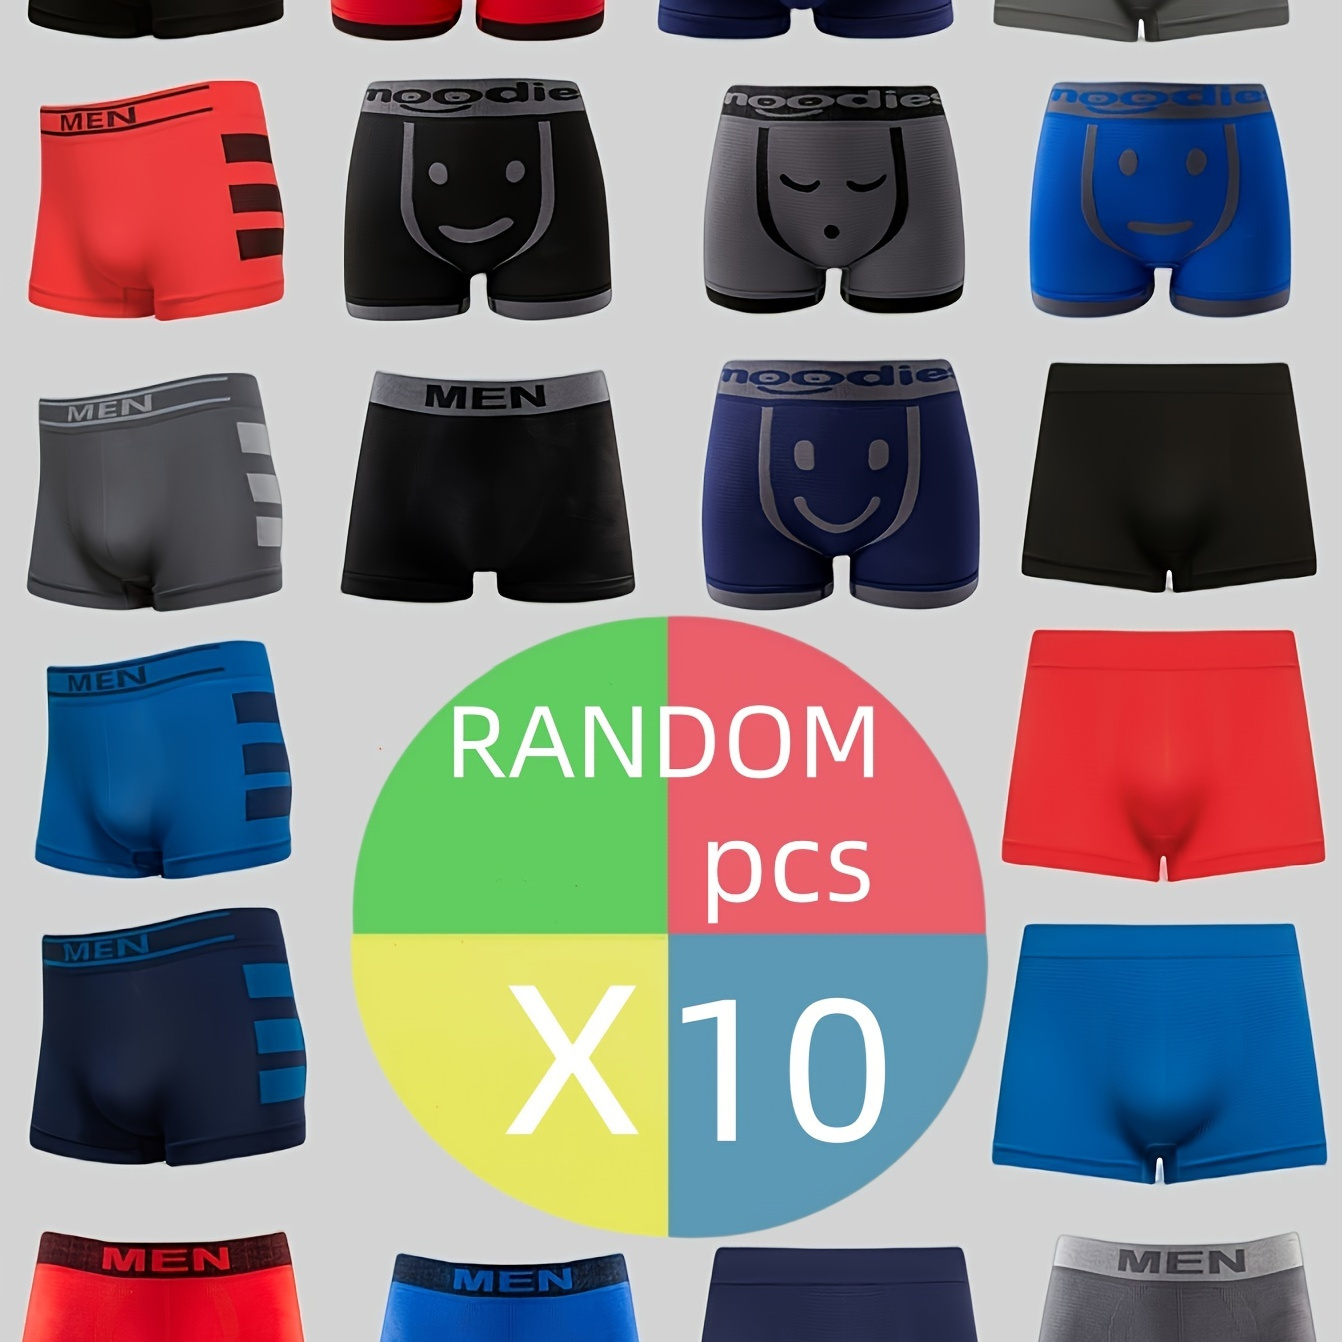 

3/5/7/10pcs Men's Random Style Breathable Comfy Quick Drying Stretch Boxer Briefs, Casual Plain Color Boxer Trunks, Men's Underwear